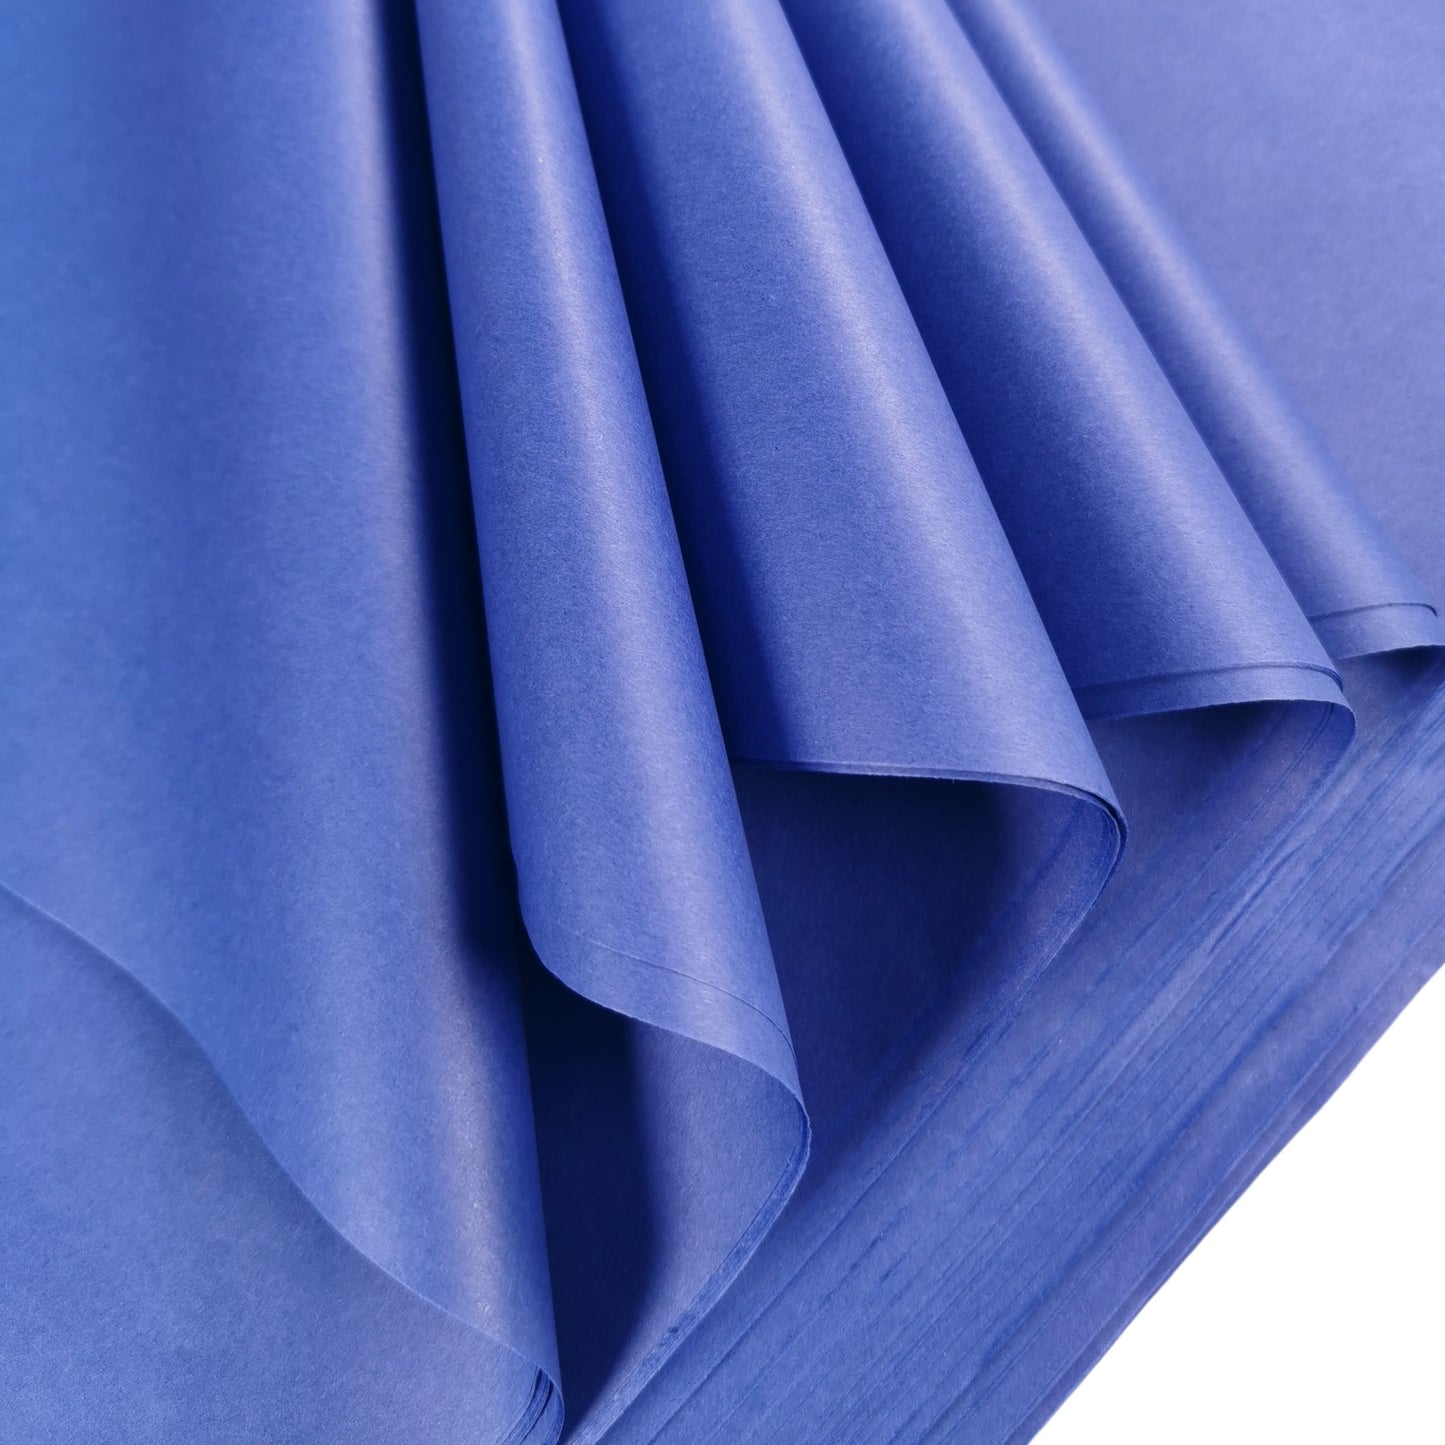 Tissue Paper 50cm x 70cm 17gsm Blue